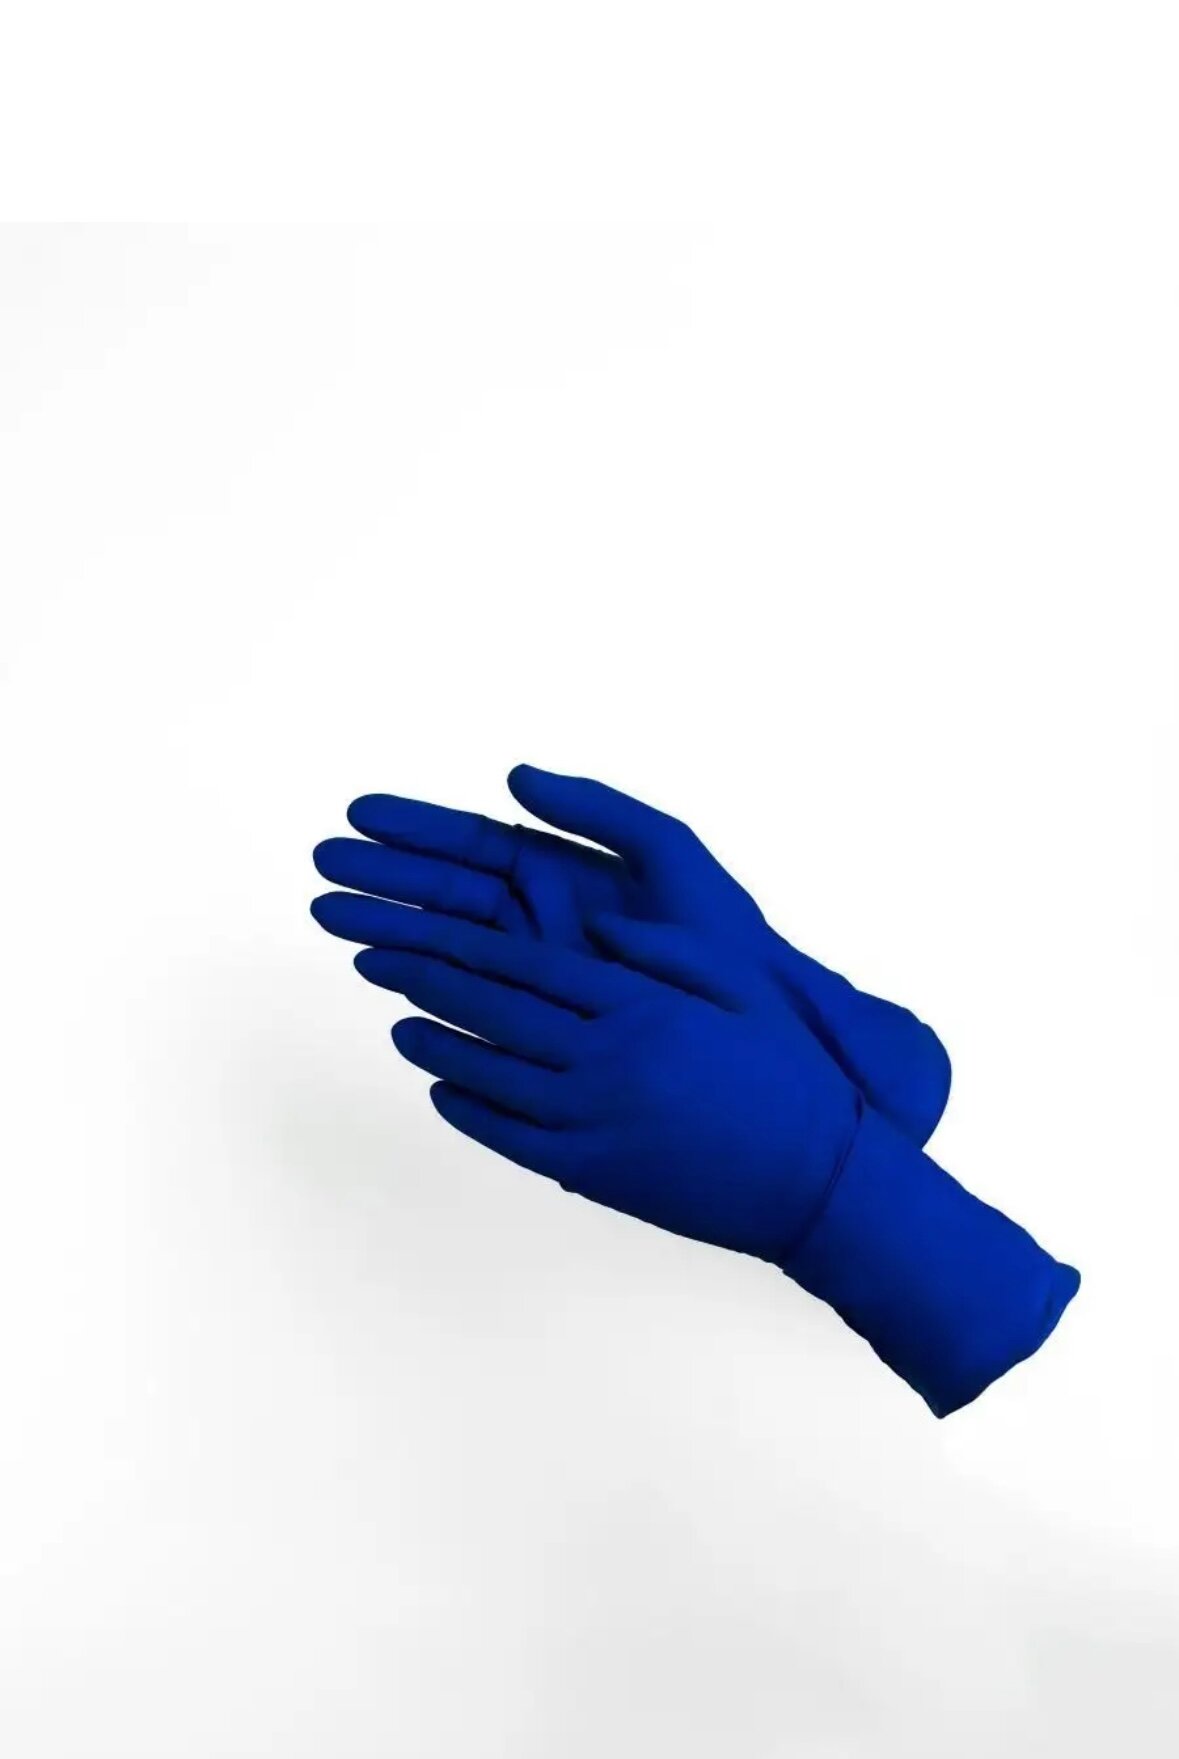 Перчатки High Risk хозяйственные латексные синие GLOVES 50шт 25 пар XL - фотография № 4